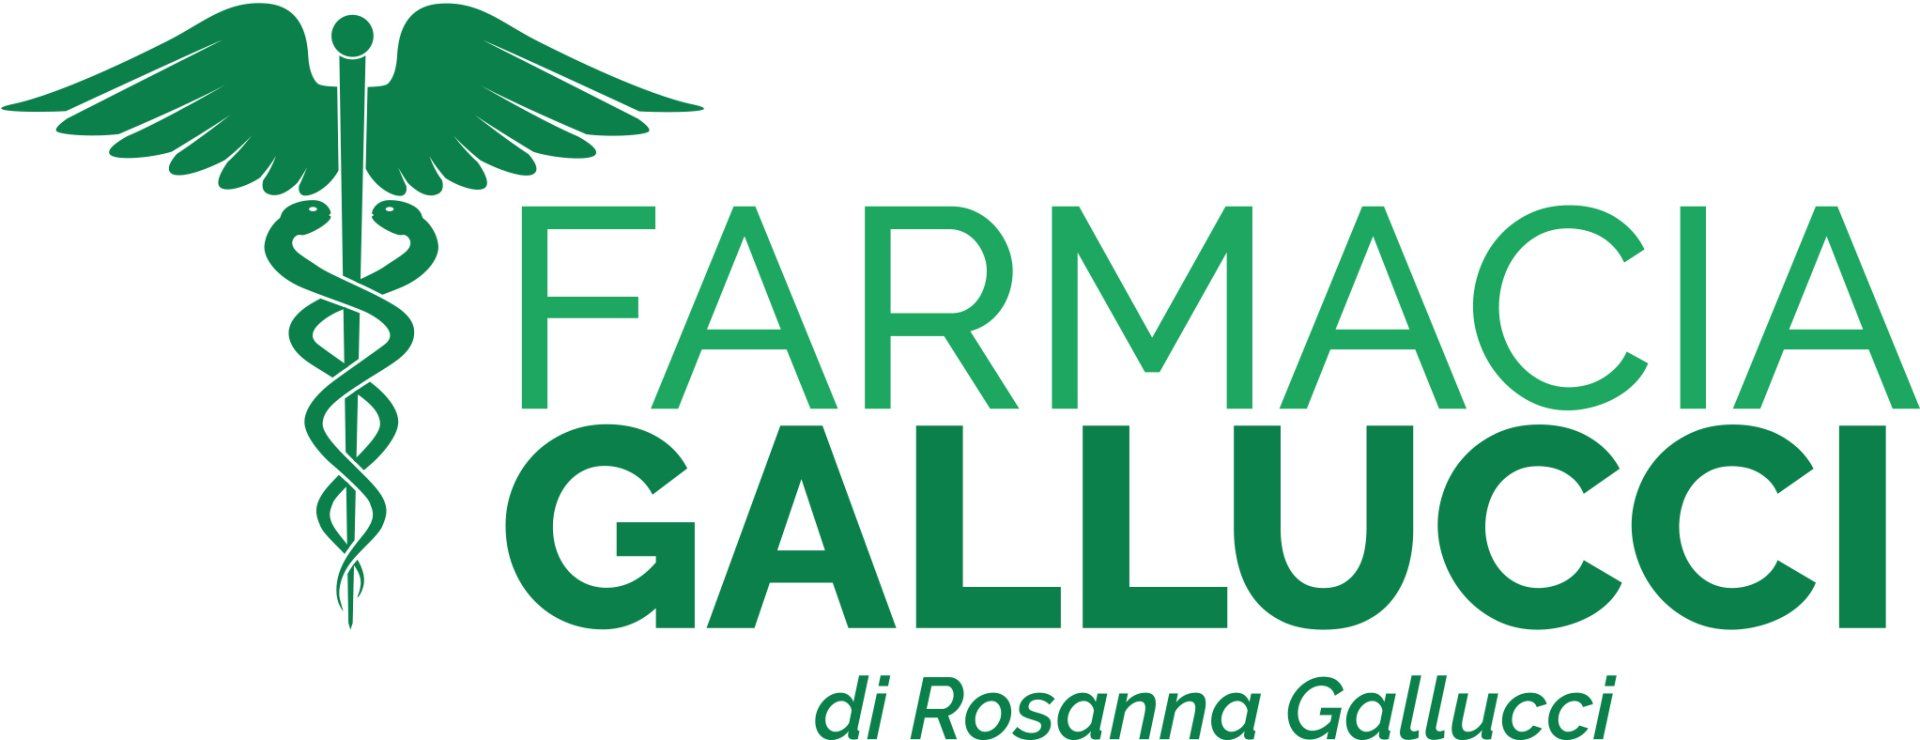 farmacia gallucci logo